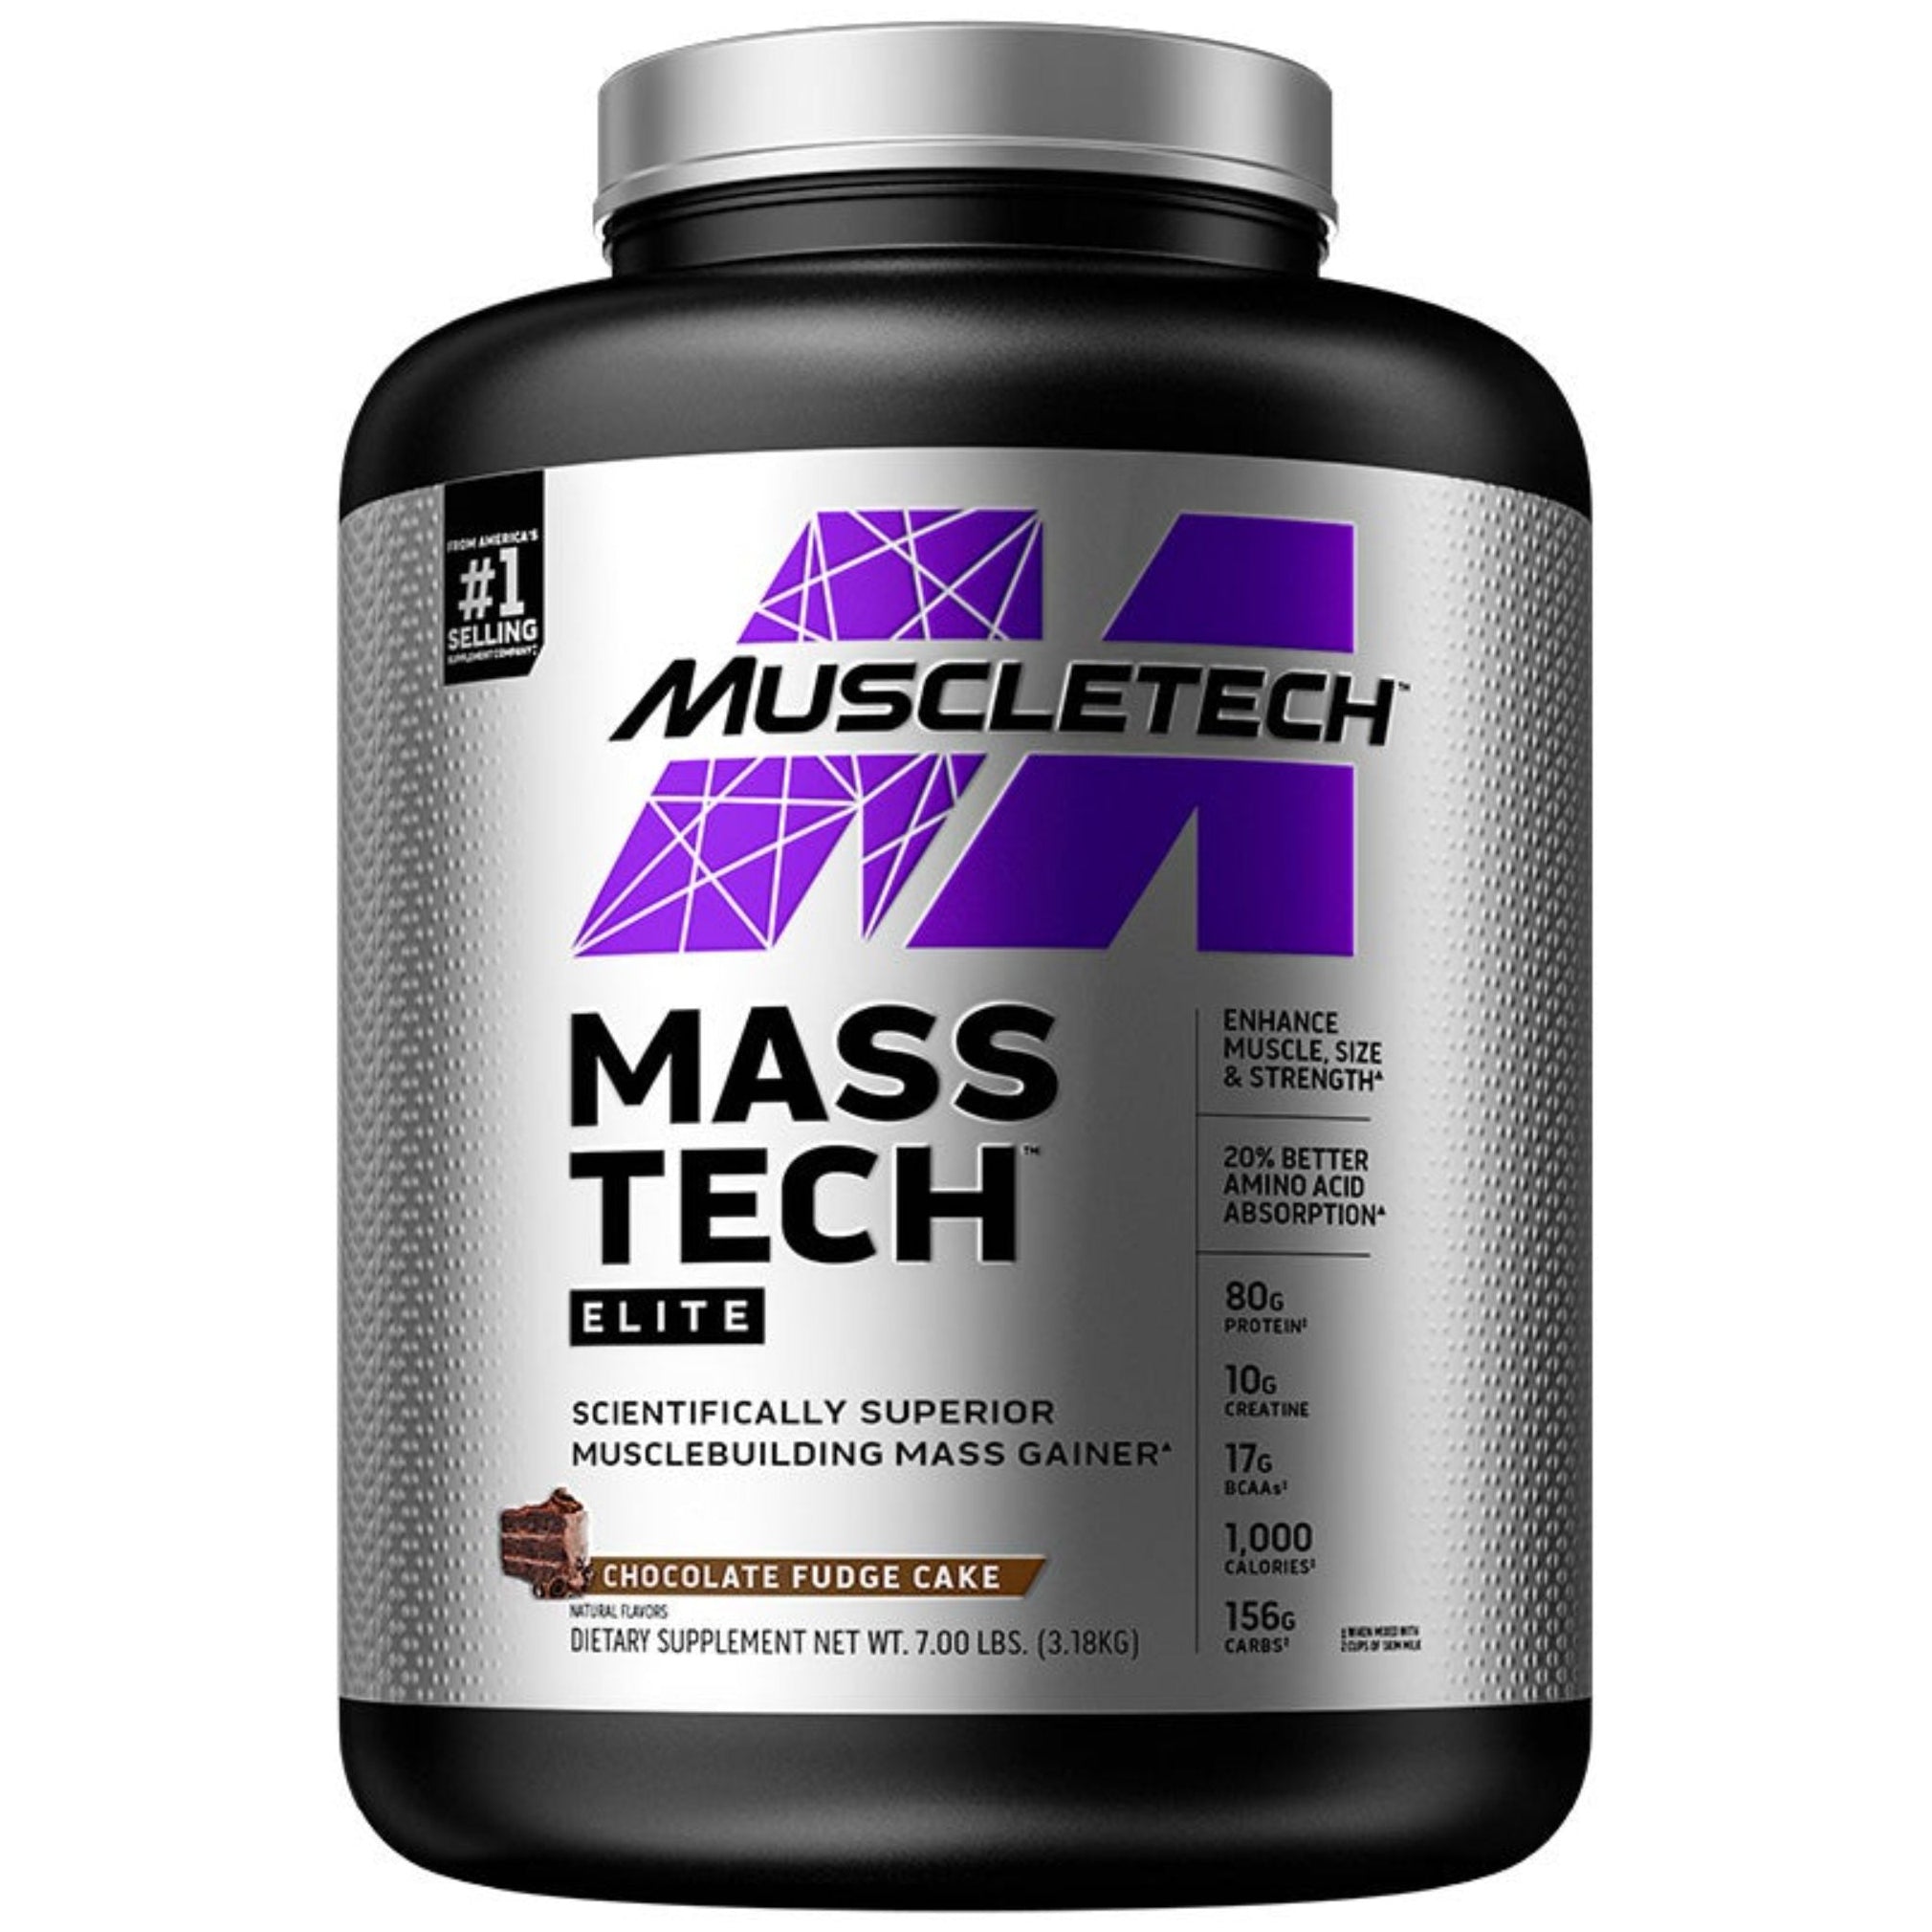 Muscletech Mass Tech Elite Protein Powder Mass Gainer